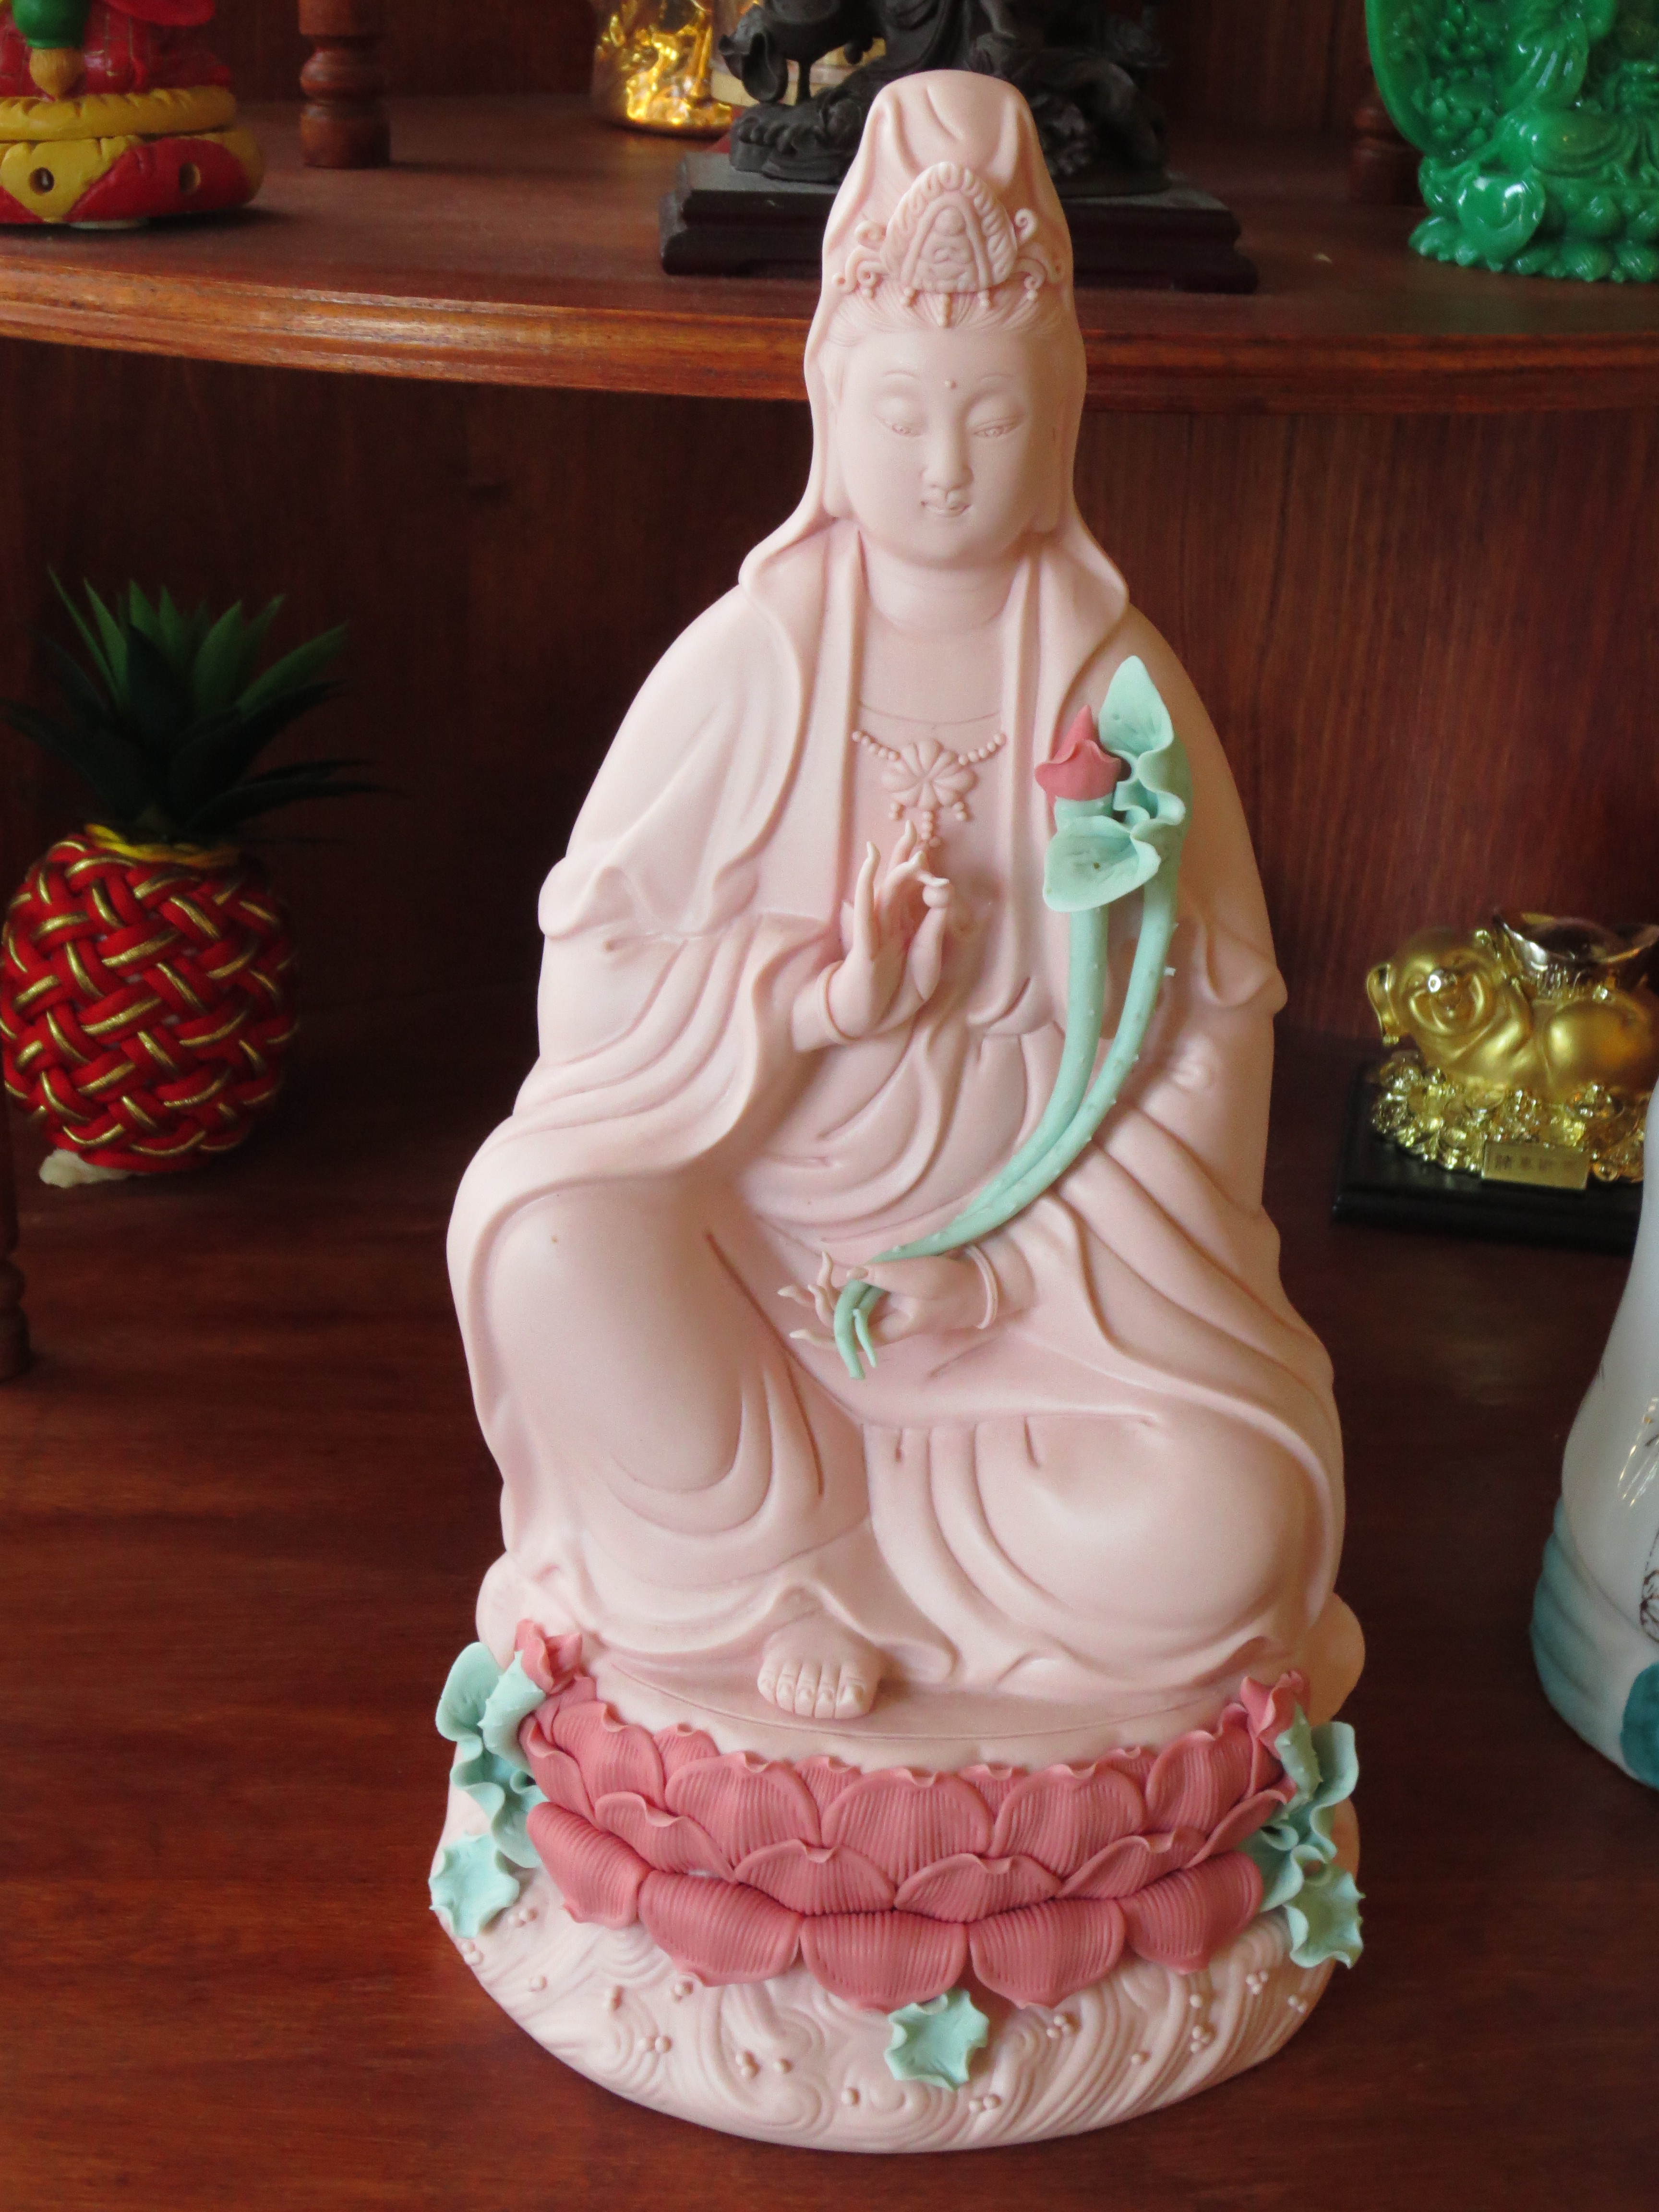 En staty på BLIA av Quan Yin (Avalokiteshvara på Sanskrit), som är medkänslans Buddha